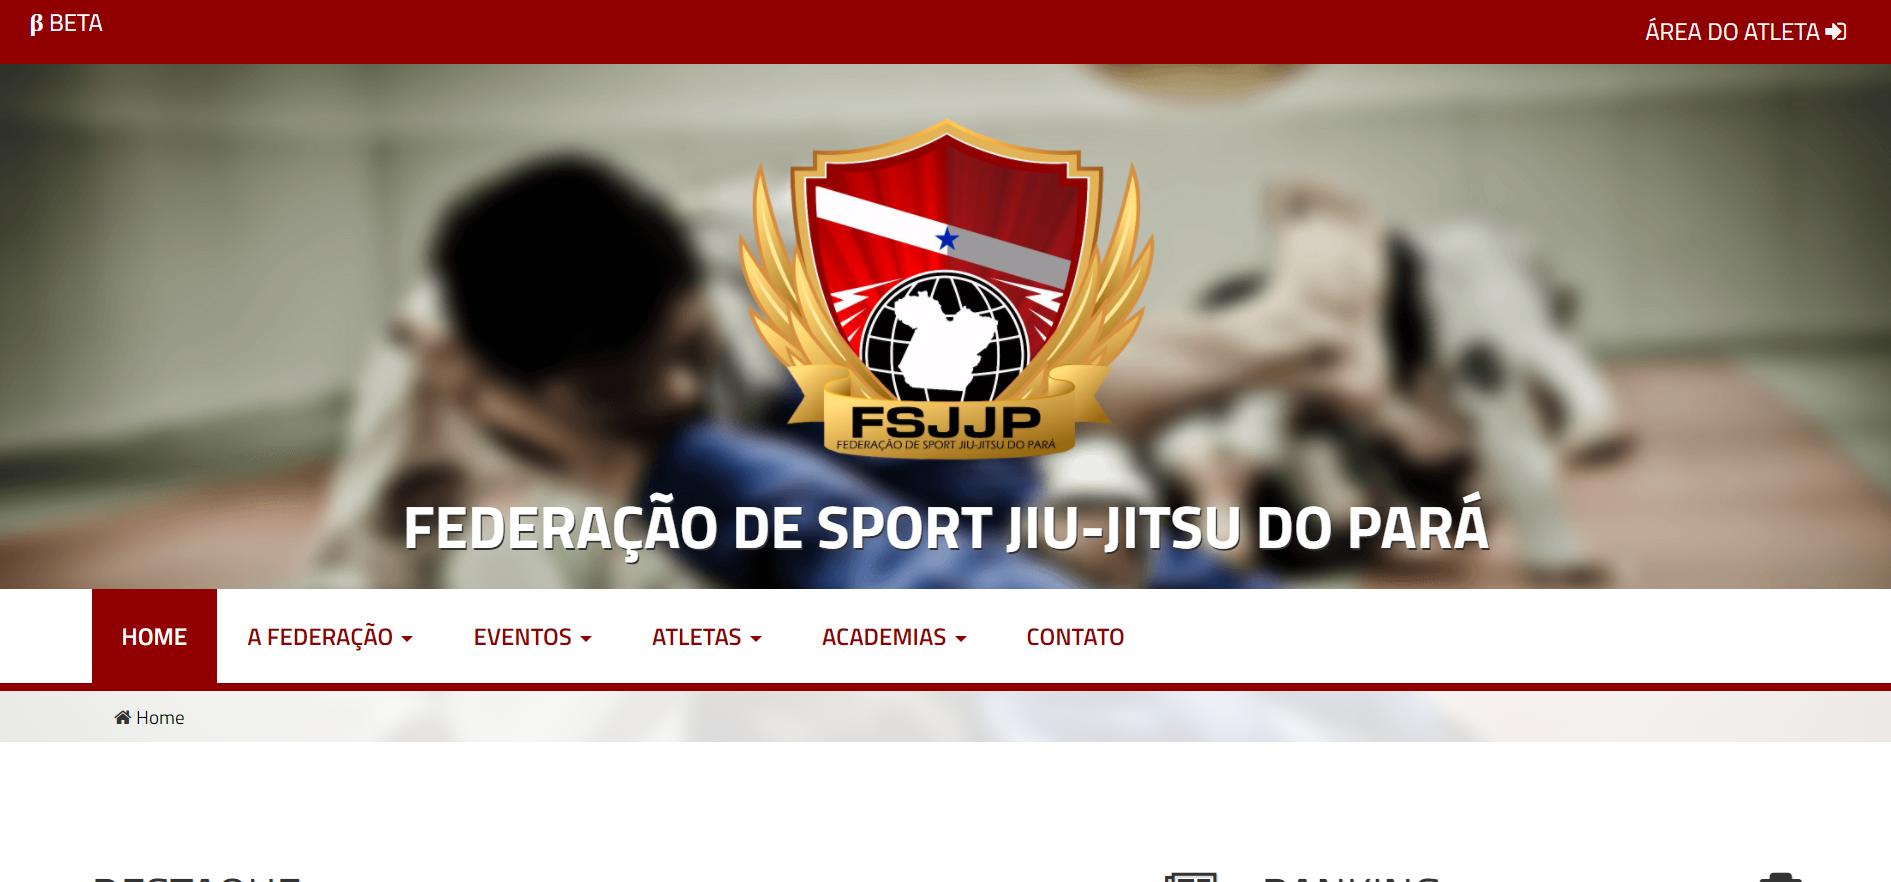 Sistema da Federação de Sport Jiu-jitsu do Pará (FSJJP)